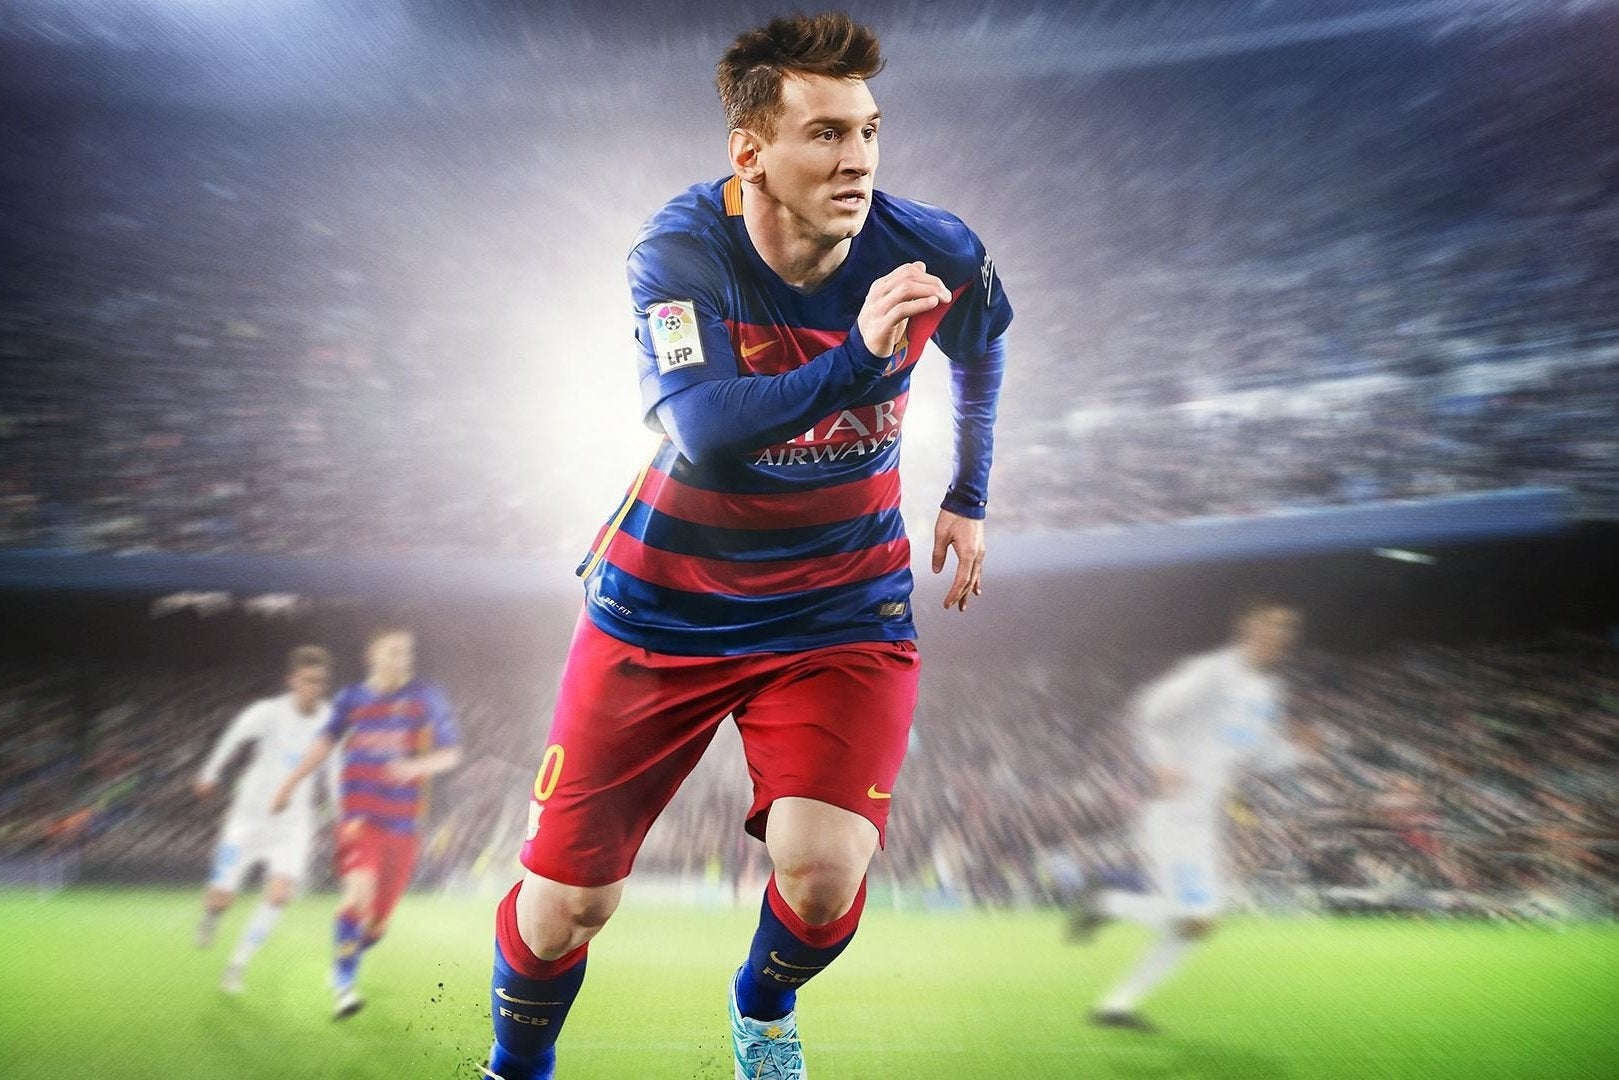 Immagine di Classifica di vendite italiana: FIFA 16 continua a dominare